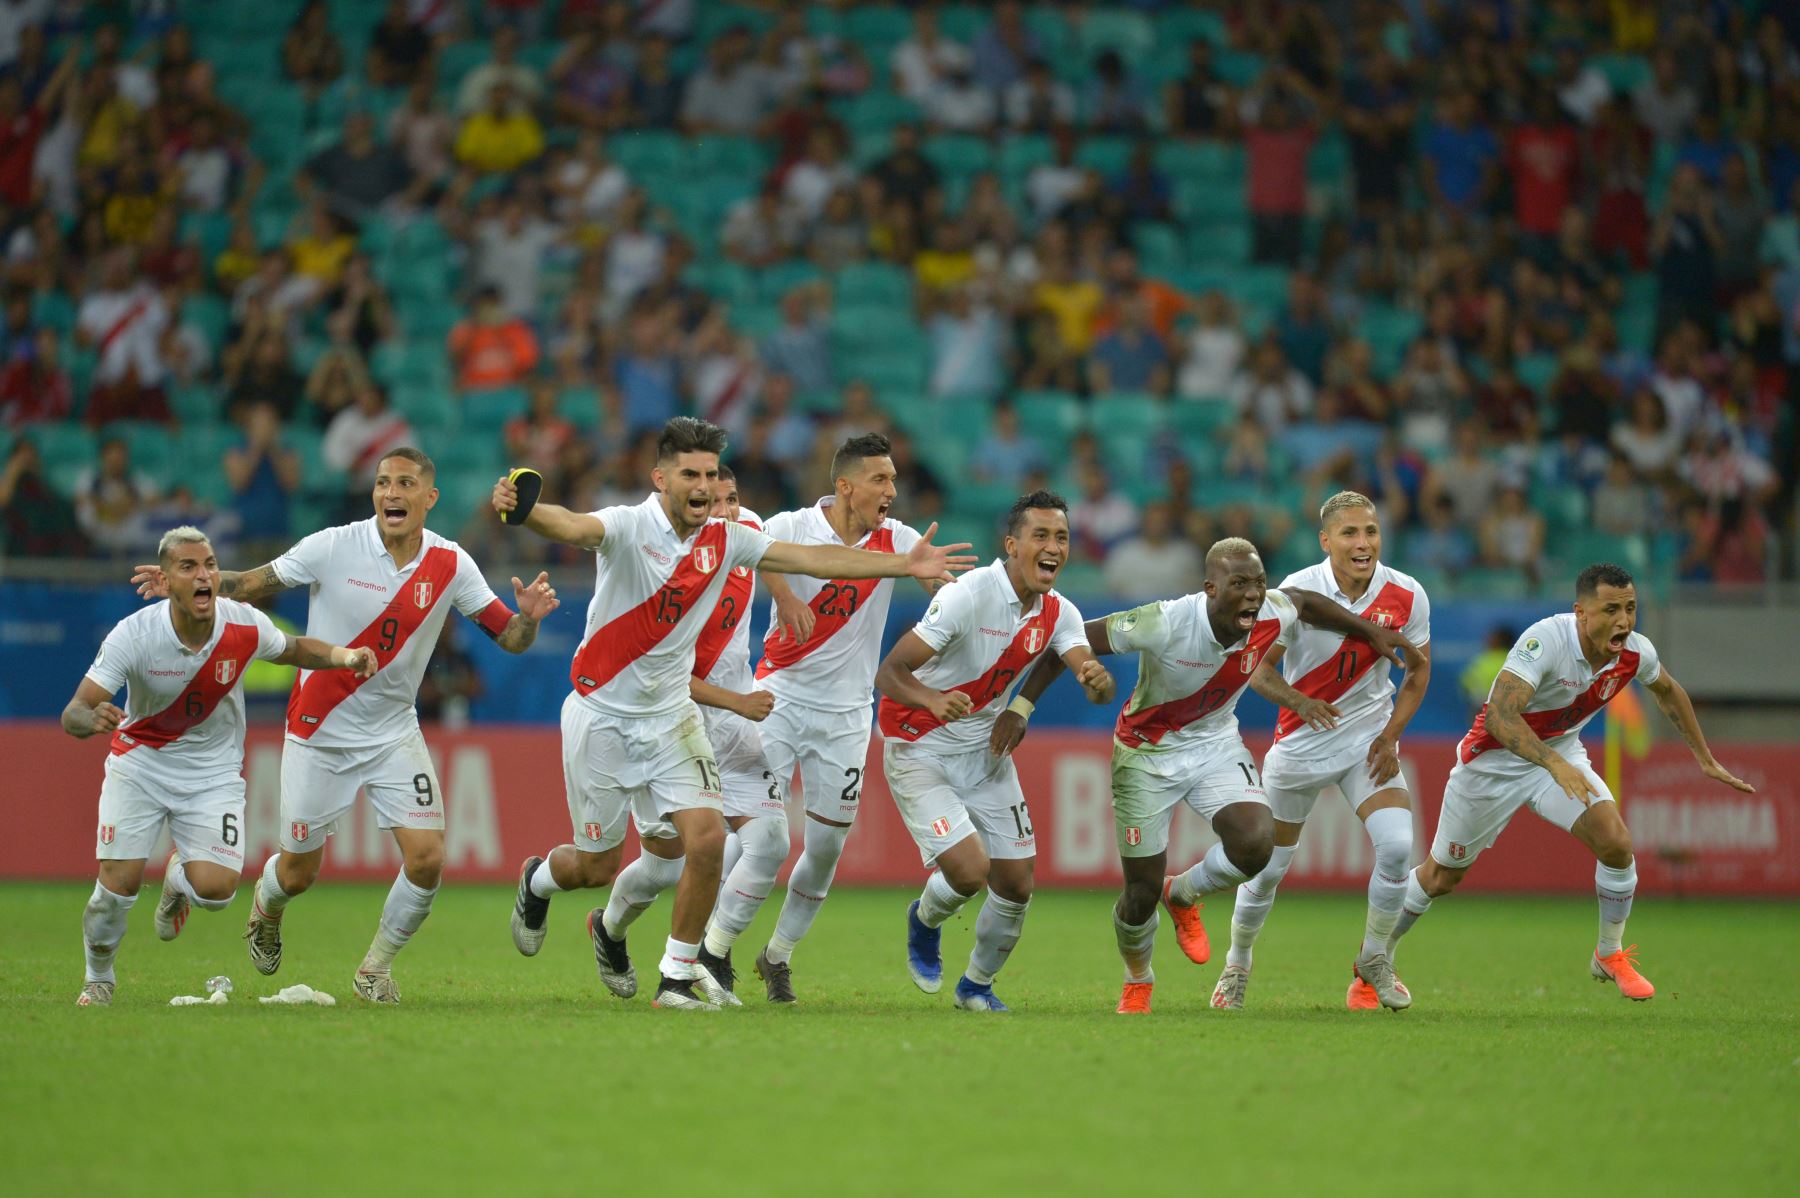 Los jugadores de Perú celebran después de derrotar a Uruguay en el tiroteo de penalización luego de empatar 0-0 durante su partido de cuartos de final del torneo de fútbol de la Copa América en el Fonte Nova Arena.
Foto: AFP